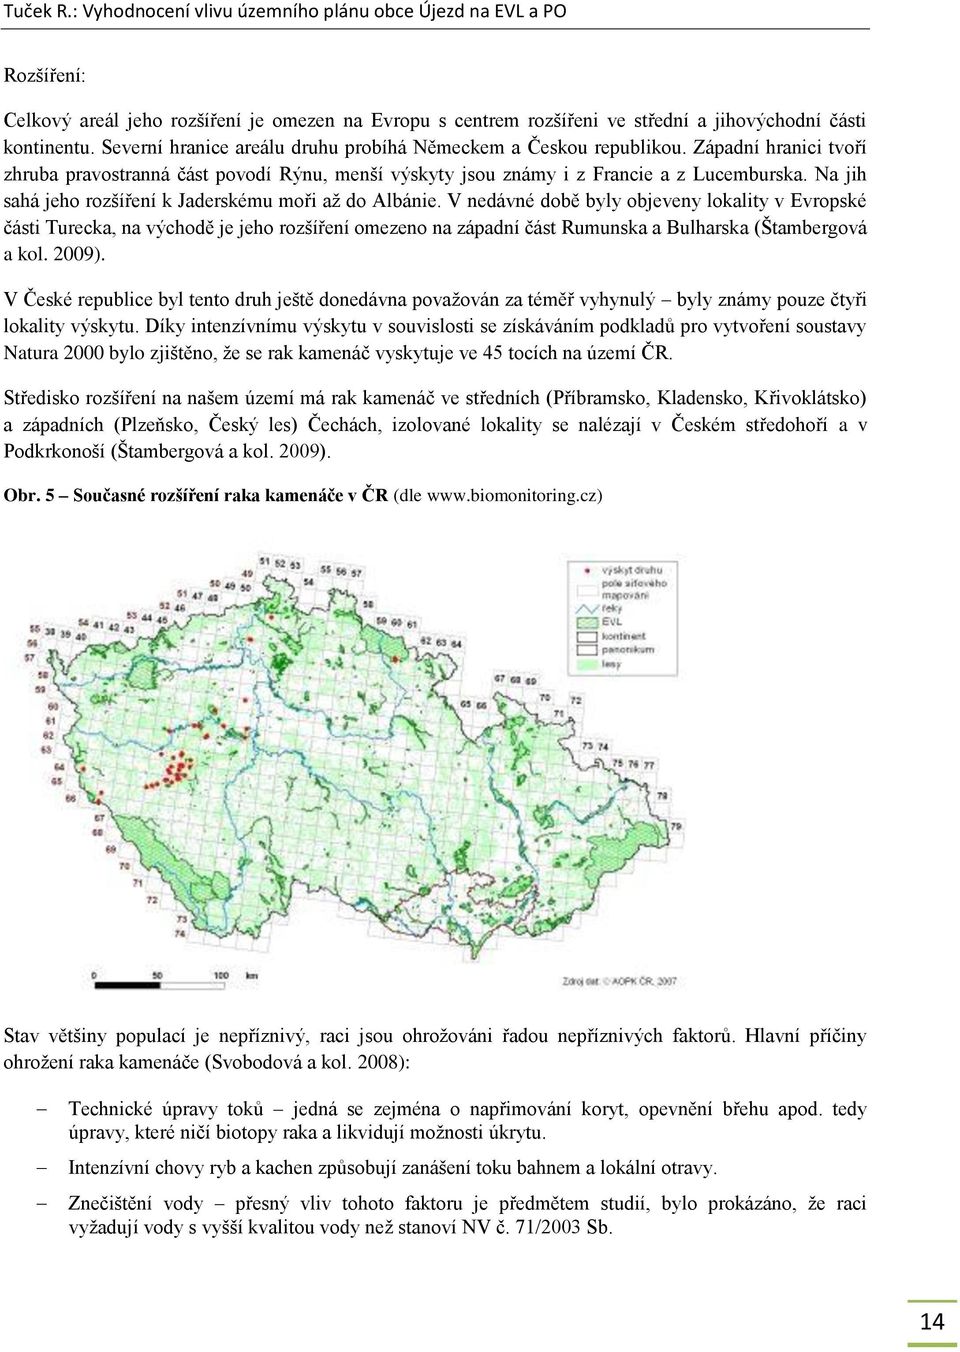 V nedávné době byly objeveny lokality v Evropské části Turecka, na východě je jeho rozšíření omezeno na západní část Rumunska a Bulharska (Štambergová a kol. 2009).